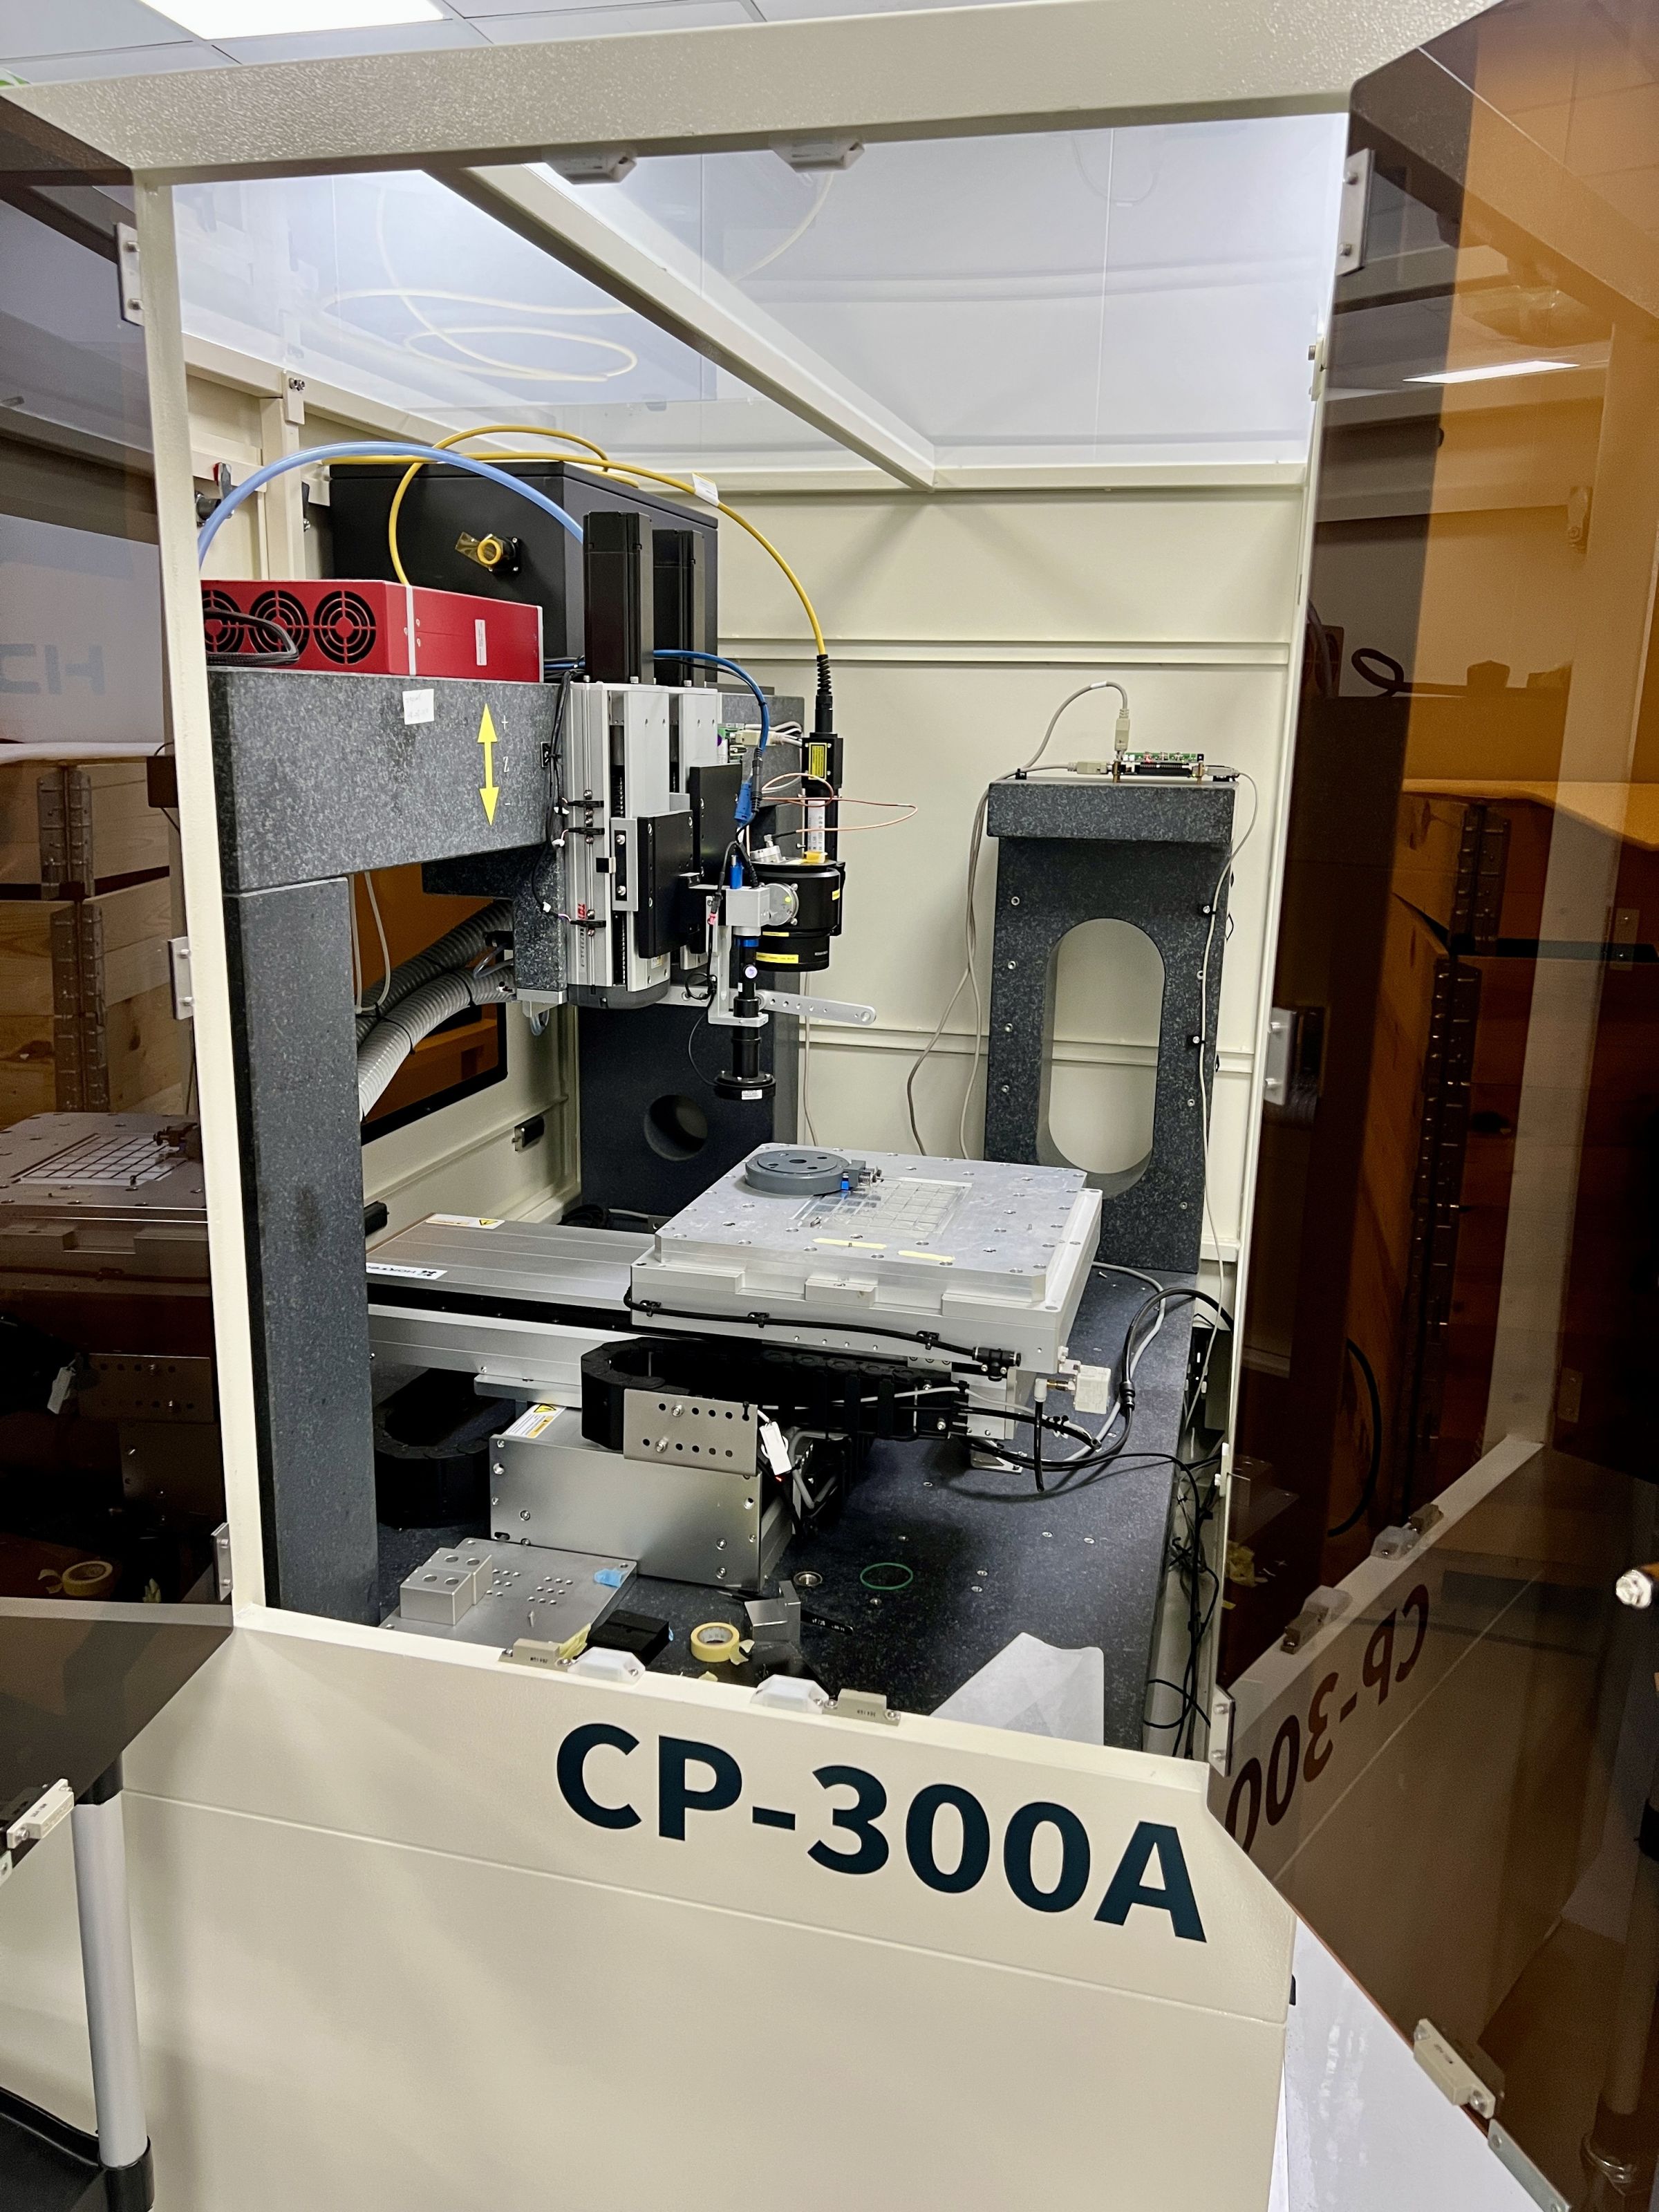 Les machines de micro-gravure au laser d'Hortech peuvent être intégrées dans le processus de fabrication. Elles aident à intégrer les informations de contrôle qualité dans le produit en tant que certification unique pour la traçabilité.